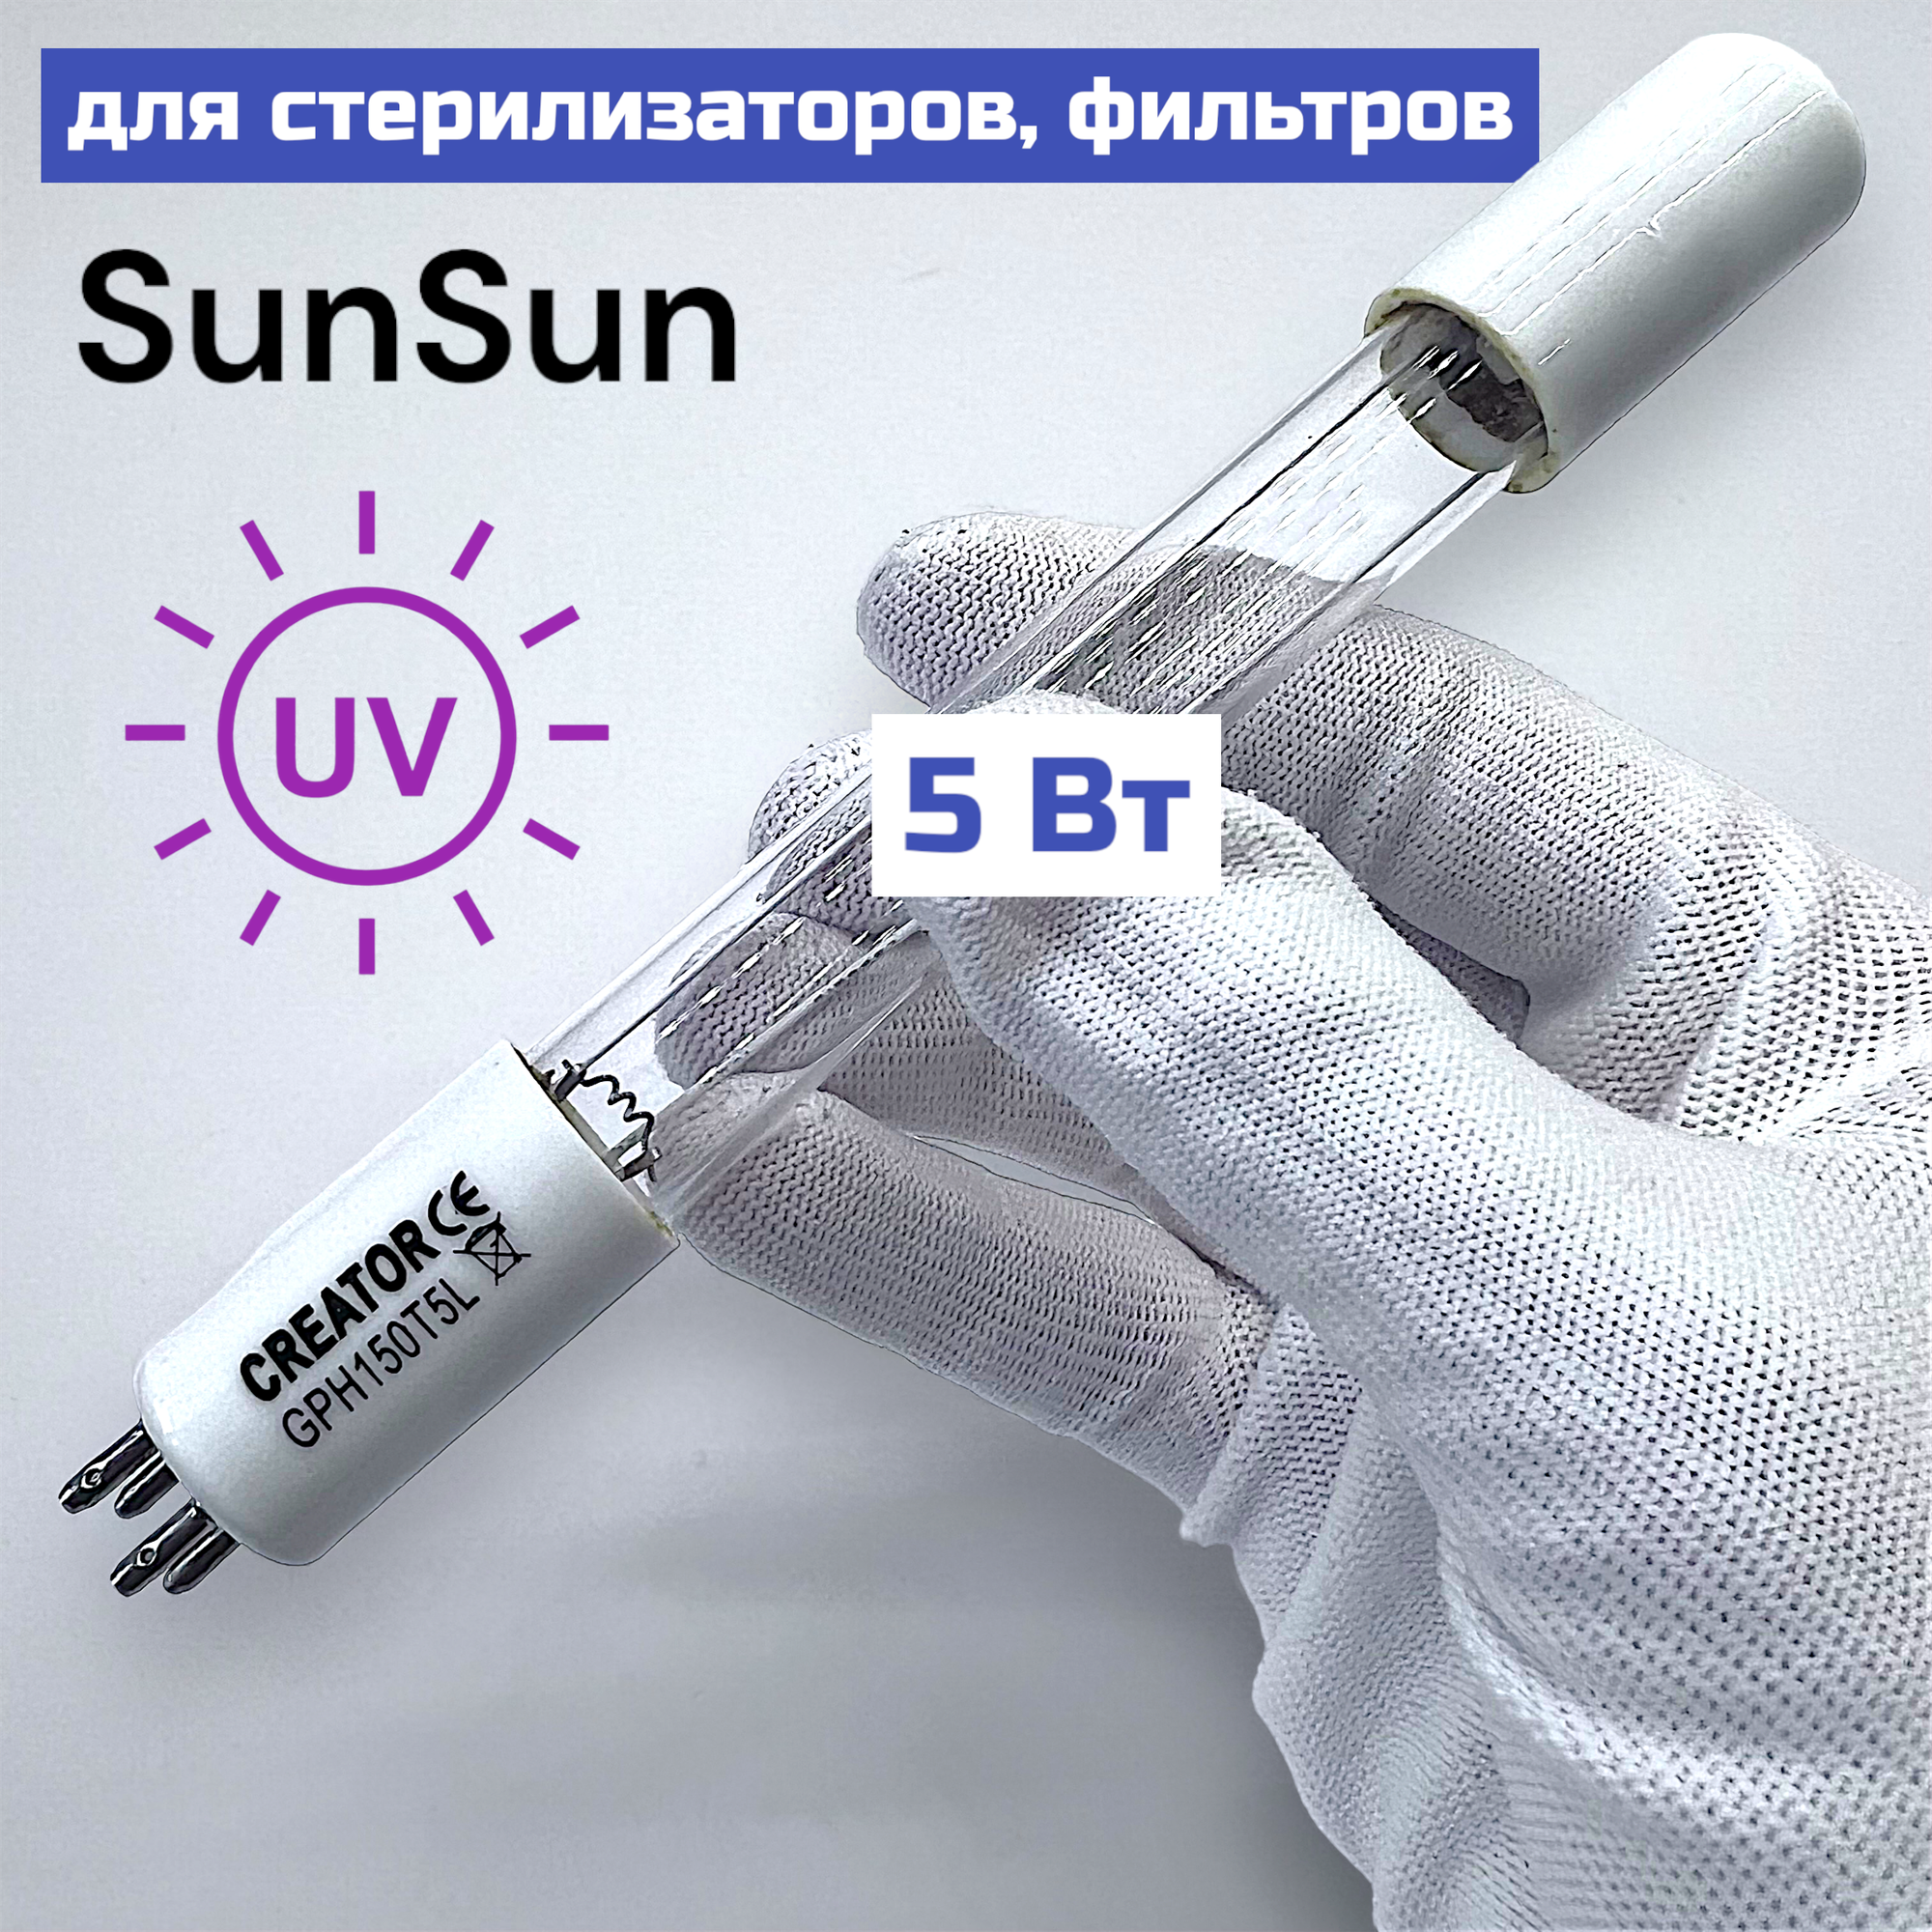 УФ лампа Creator 5w, GPH150 Т5L для стерилизатора, фильтра SunSun